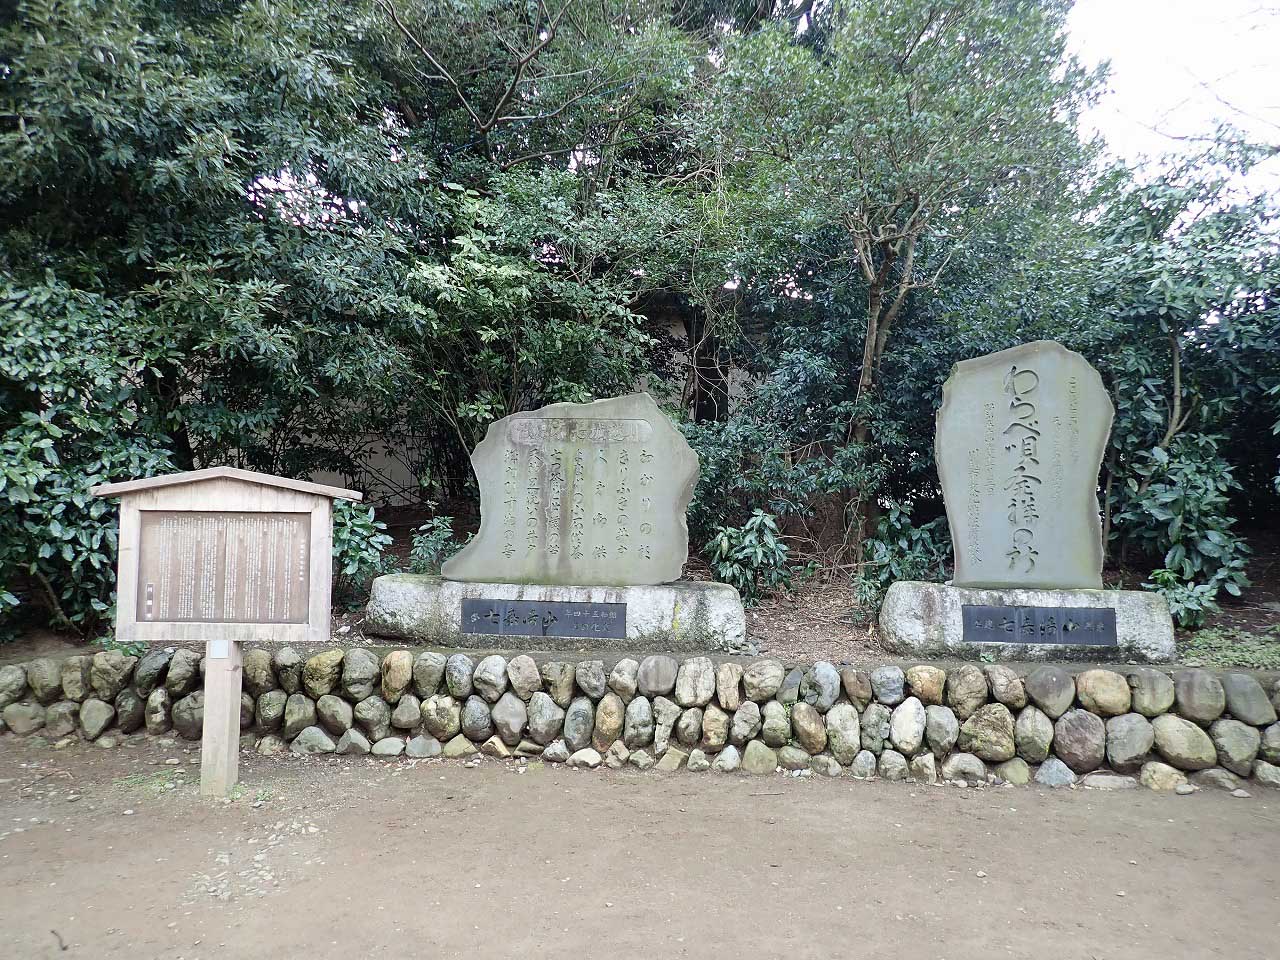 川越市の三芳野神社にある「わらべ唄発祥の所」の石碑